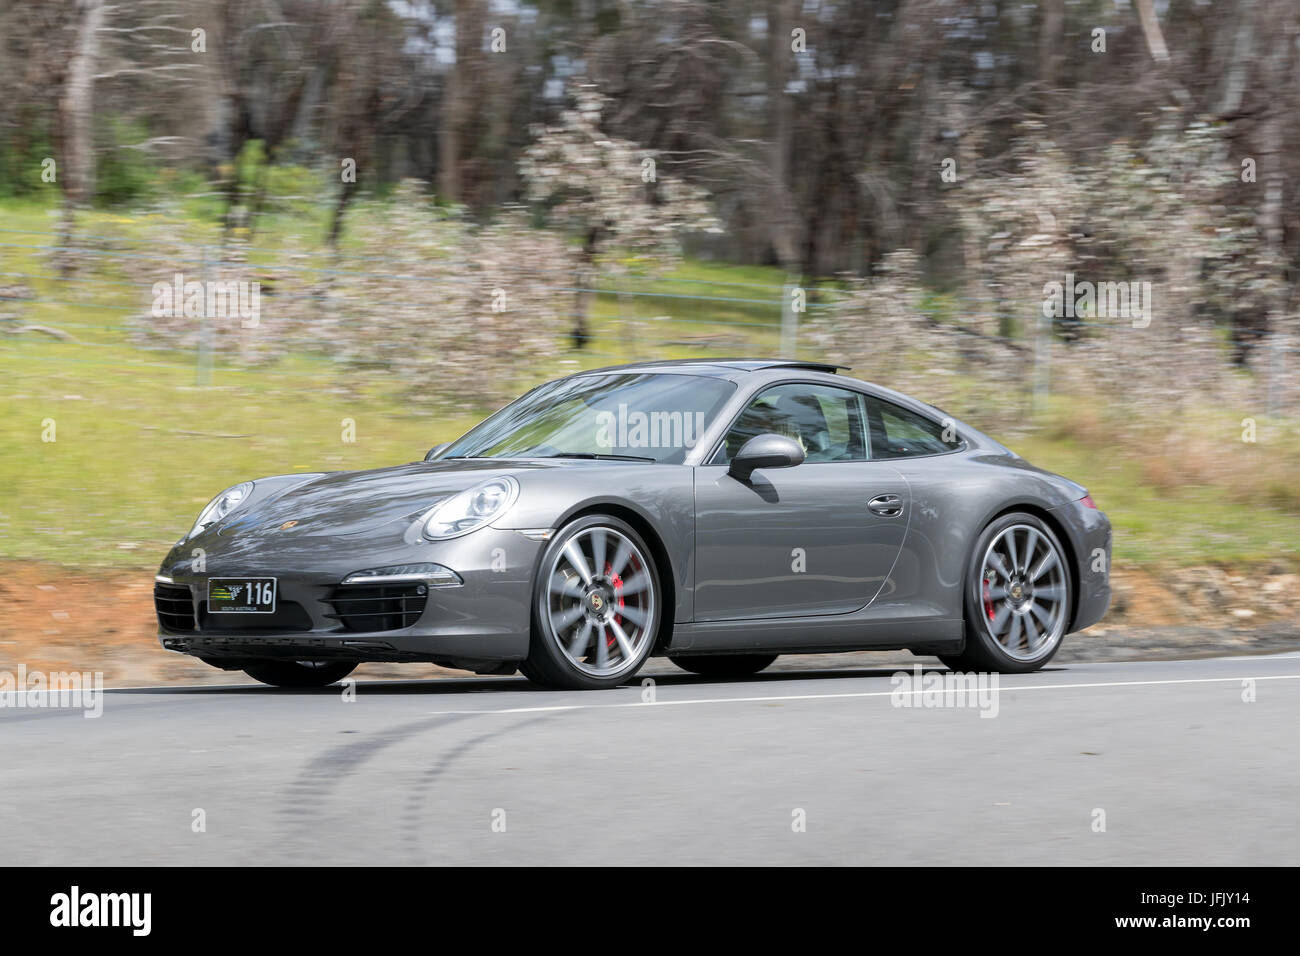 Luxus Porsche fahren auf der Landstraße in der Nähe der Stadt Birdwood, South Australia. Stockfoto